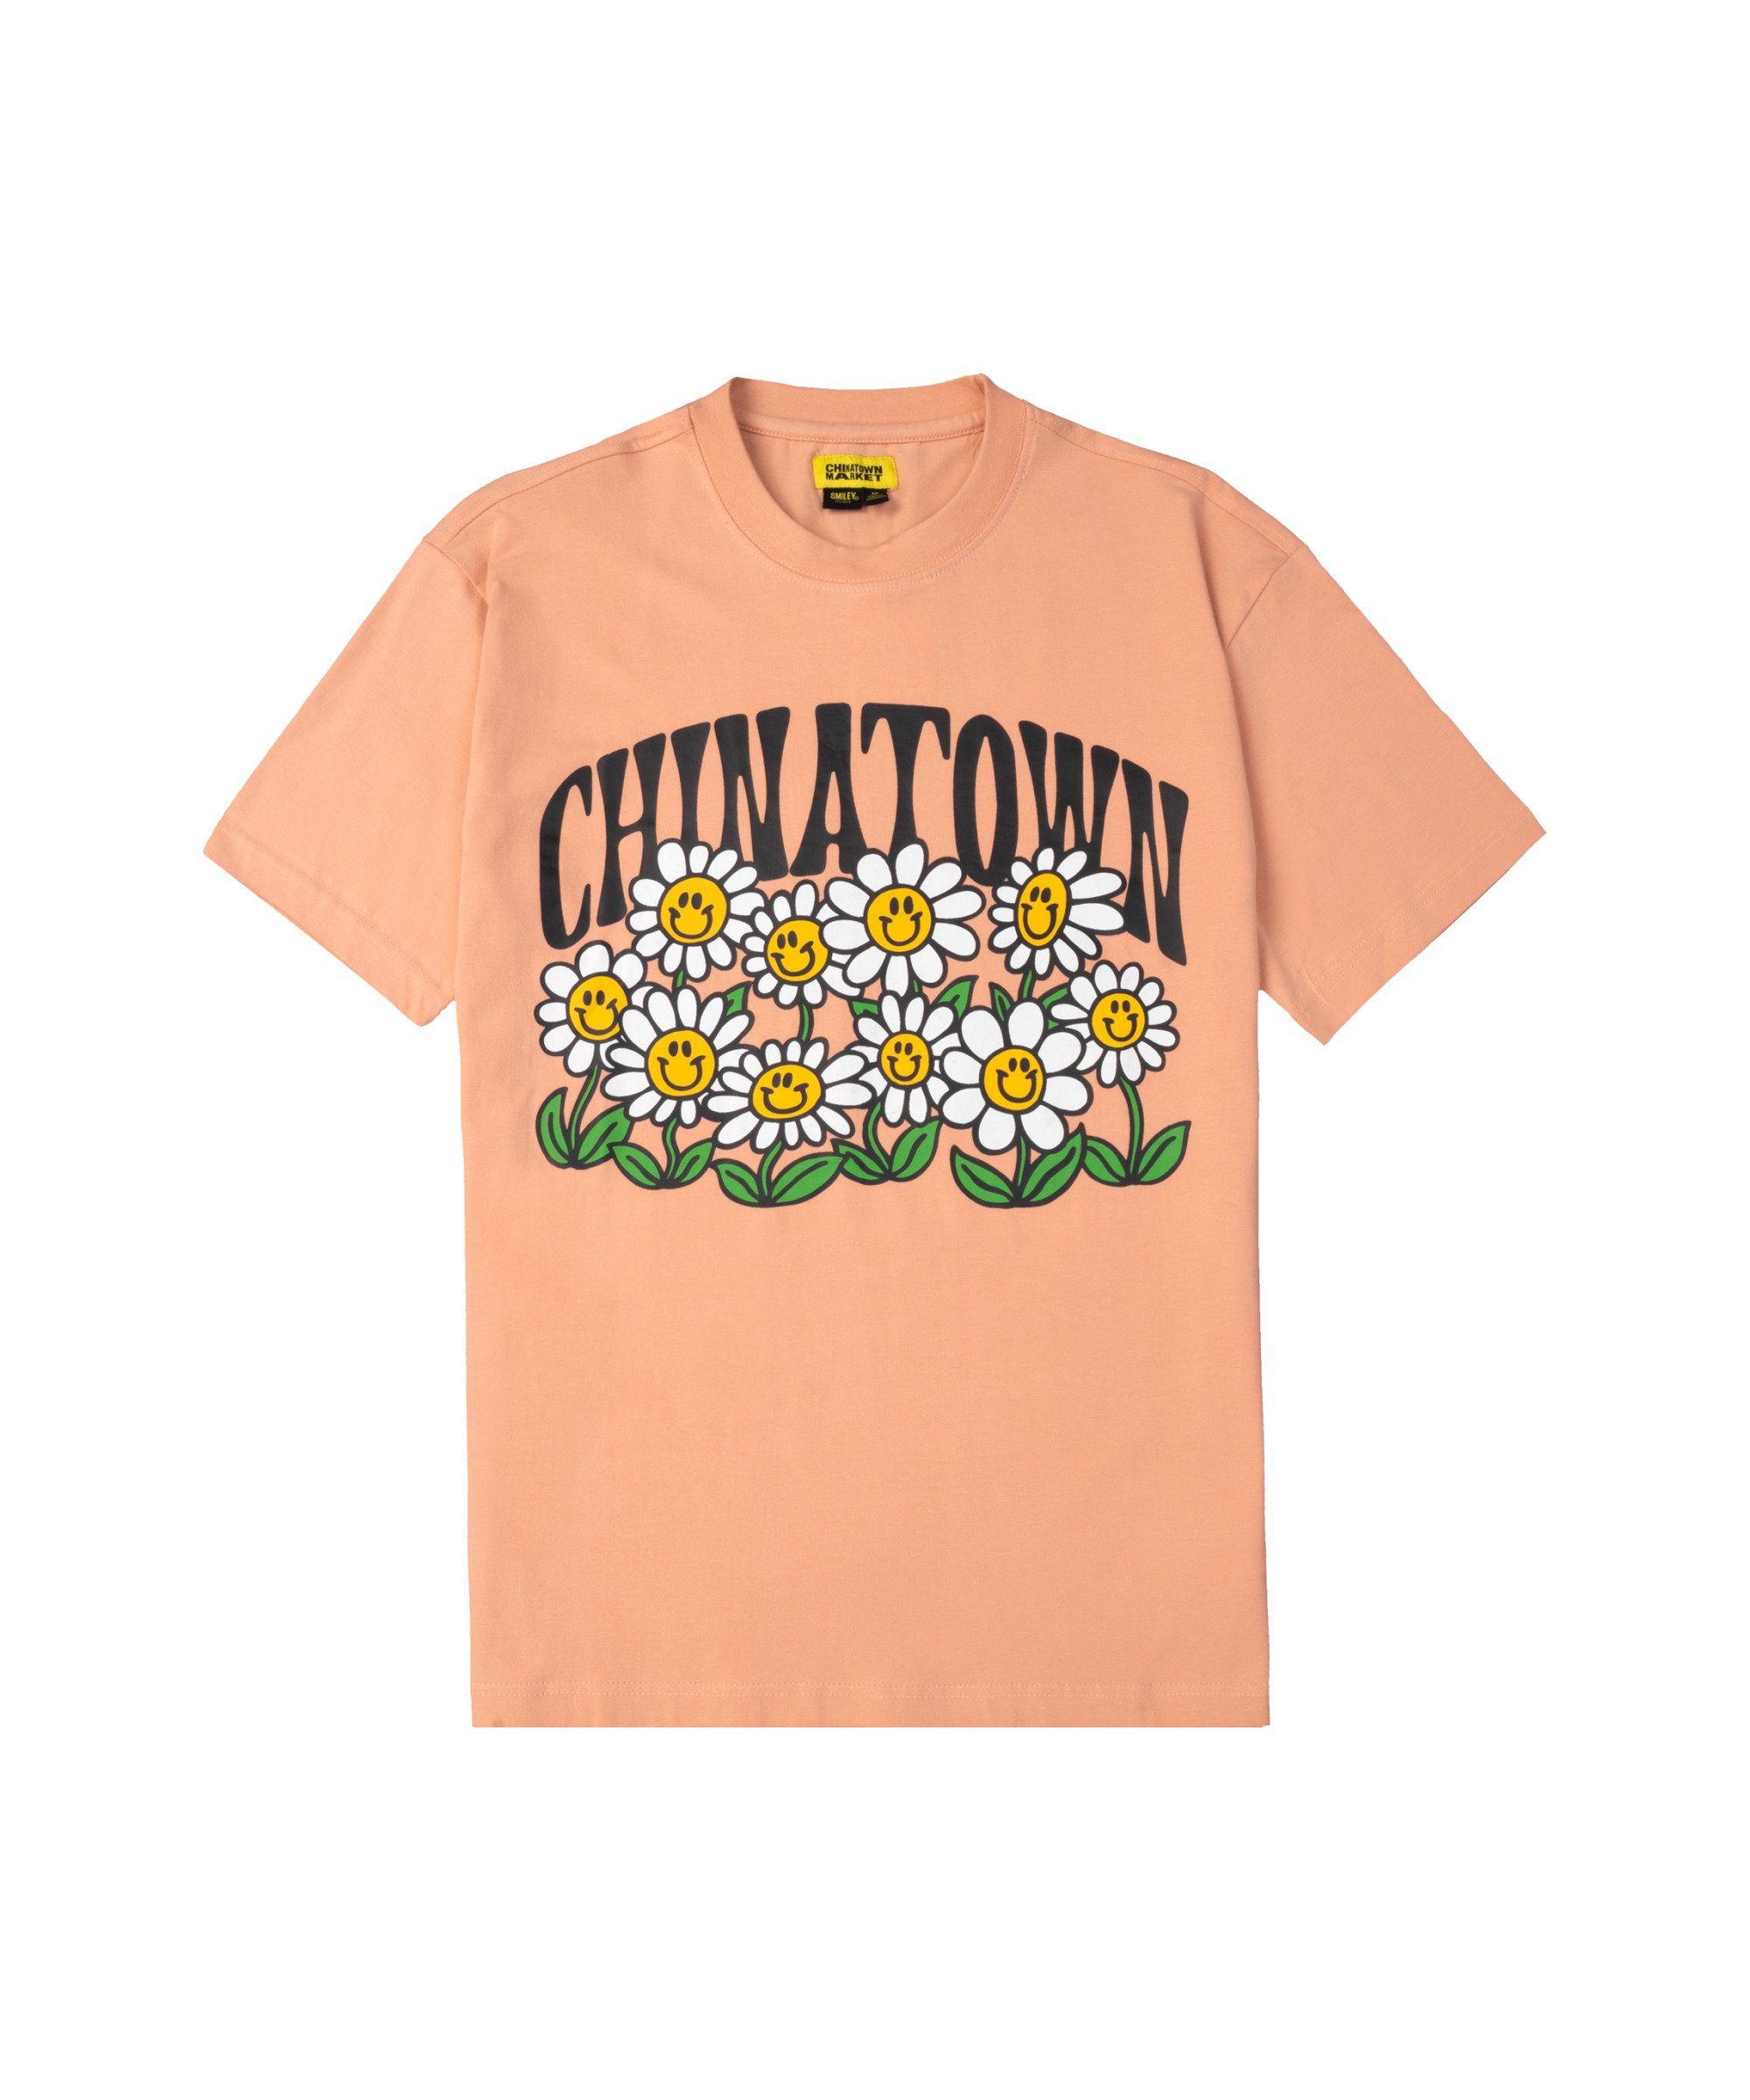 Market T-Shirt Smiley Flower Power T-Shirt default